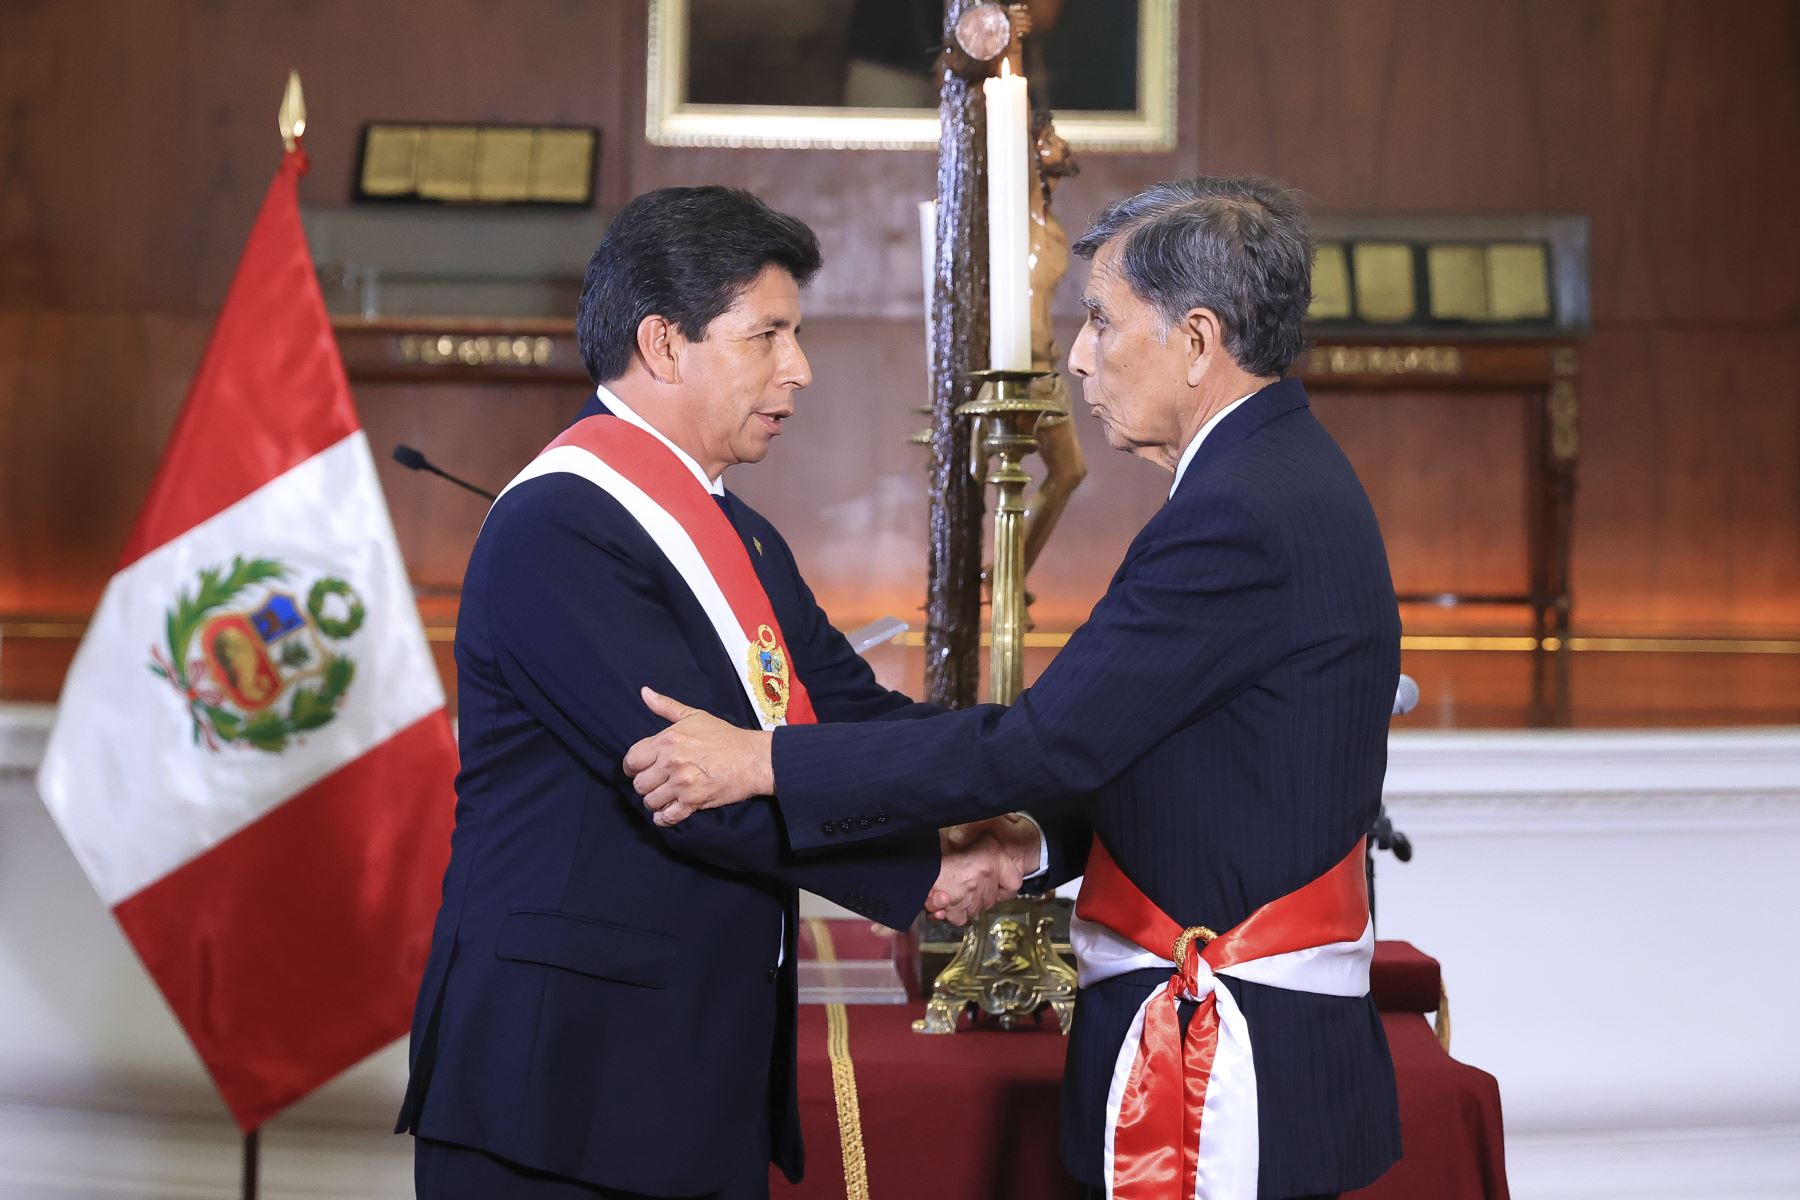 Presidente de la República, Pedro Castillo, tomó juramento al nuevo ministro de Defensa

Foto: ANDINA/Prensa Presidencia